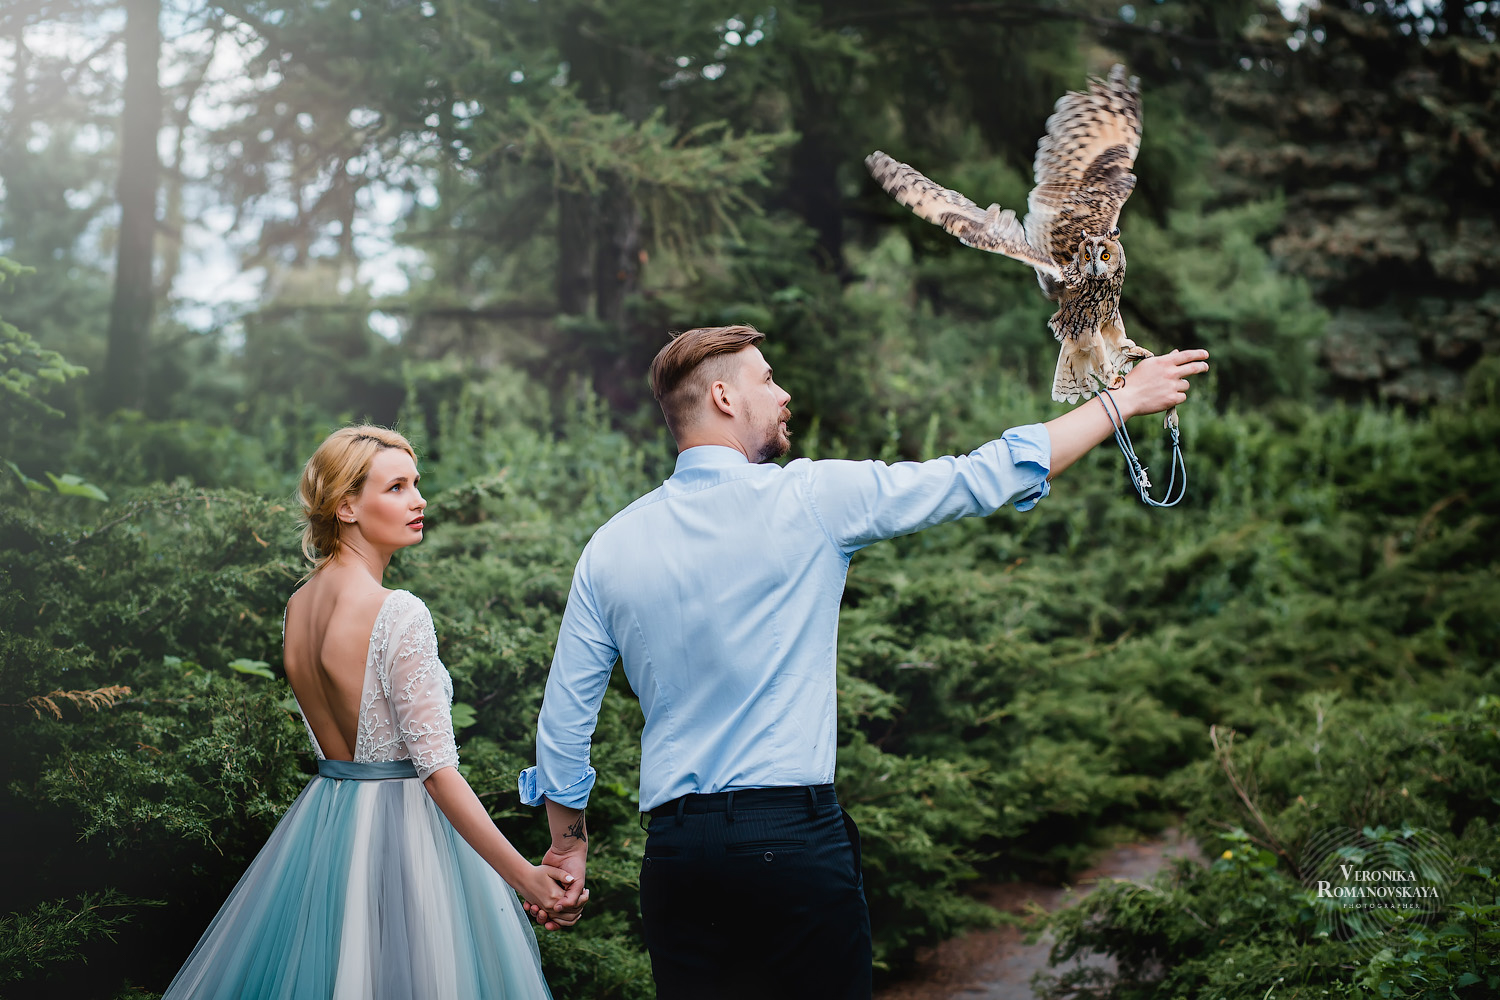 Фотосъемка в саду с птицей, ботанический сад выездная фотосессия свадебная, позирование с птицей на руке, примеры удачной съемки с птицей